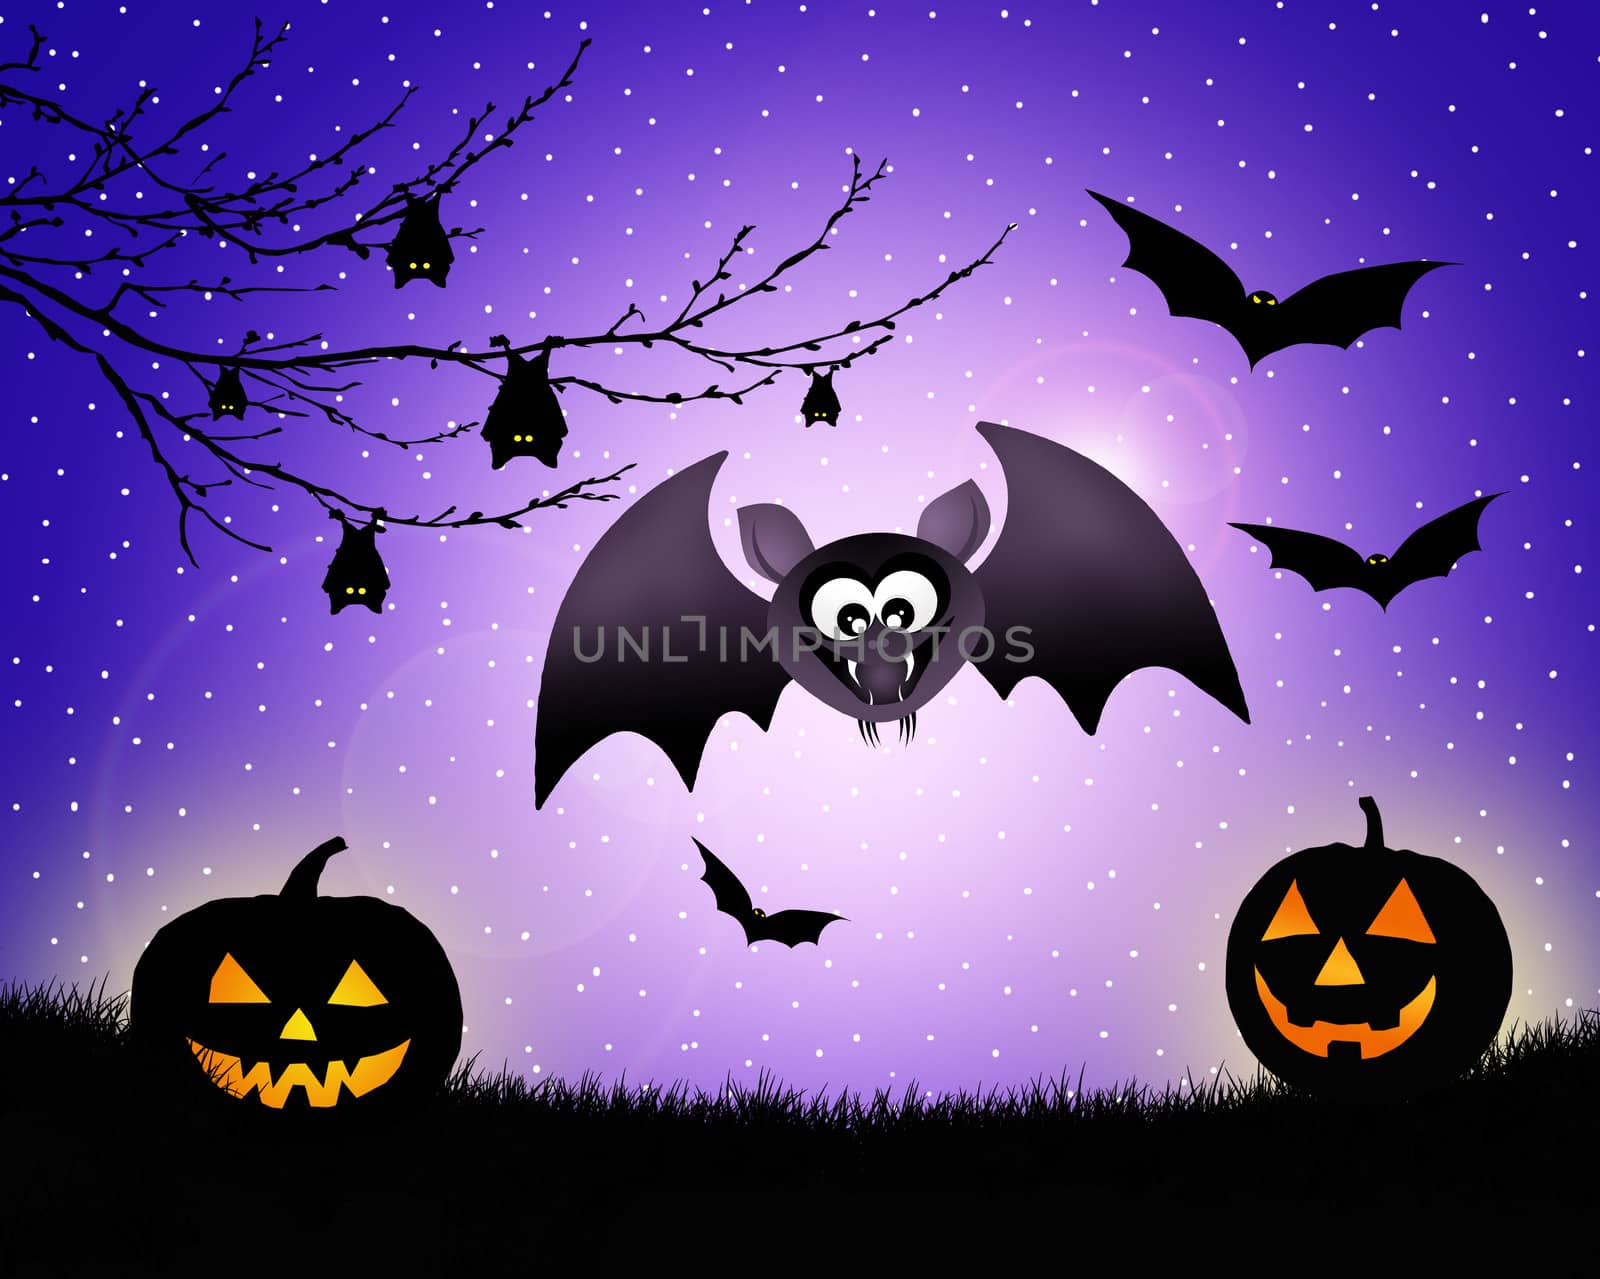 Bat cartoon of Halloween